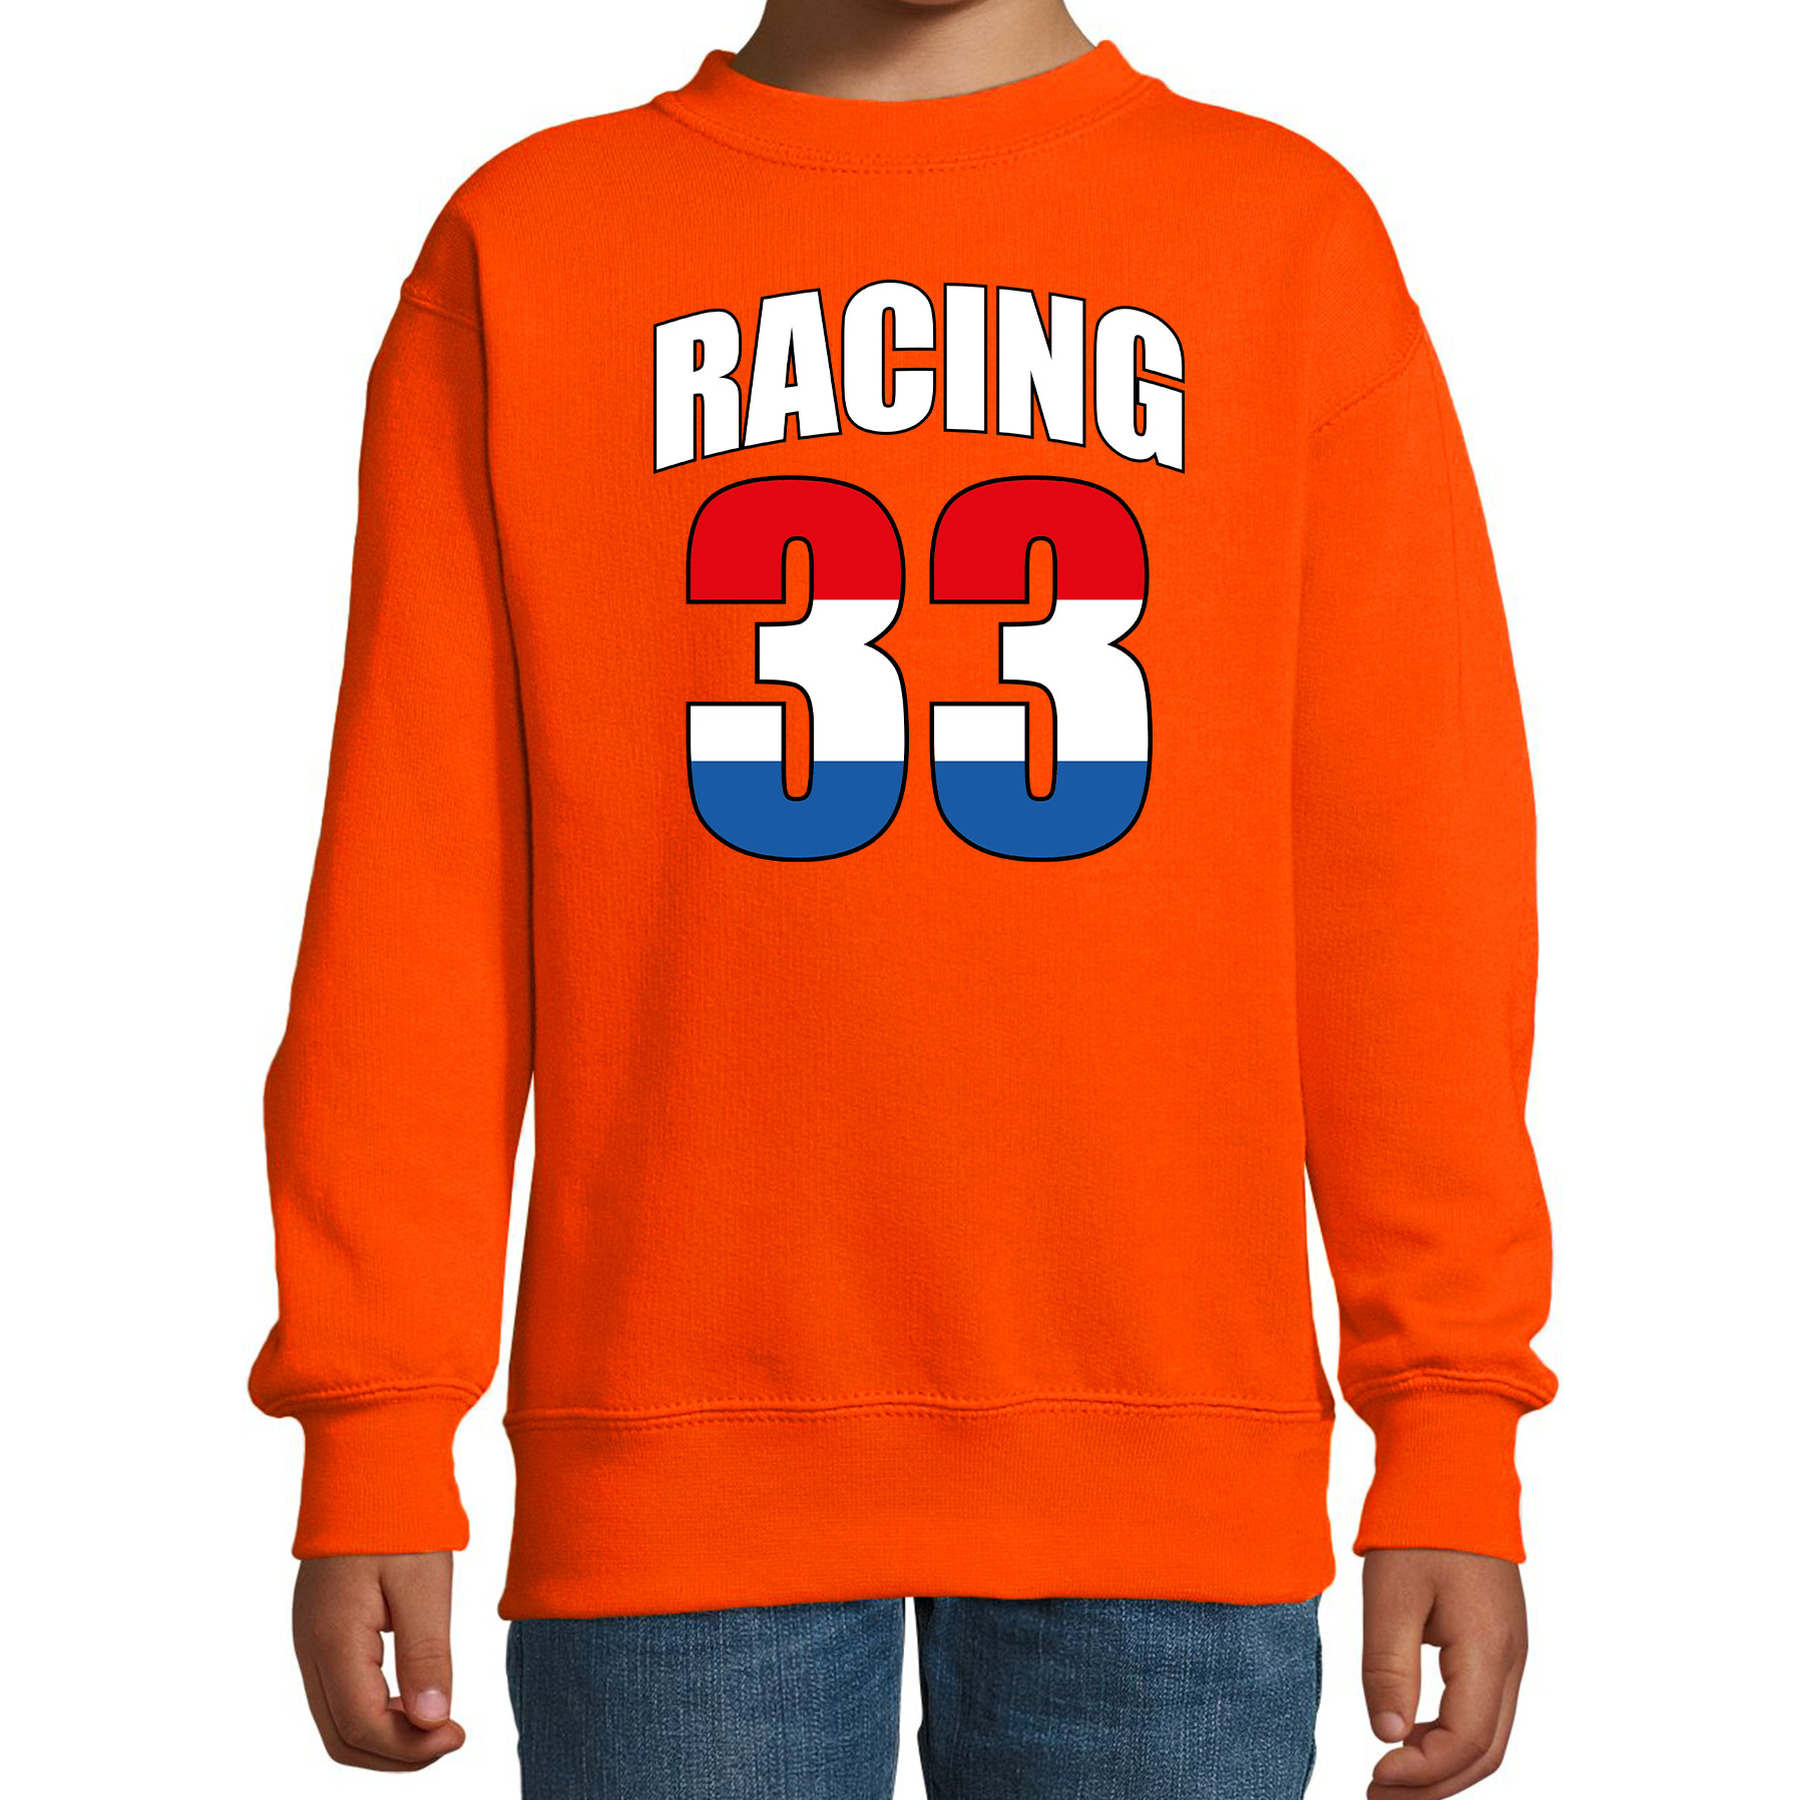 Racing 33 supporter - race fan sweater oranje voor kinderen